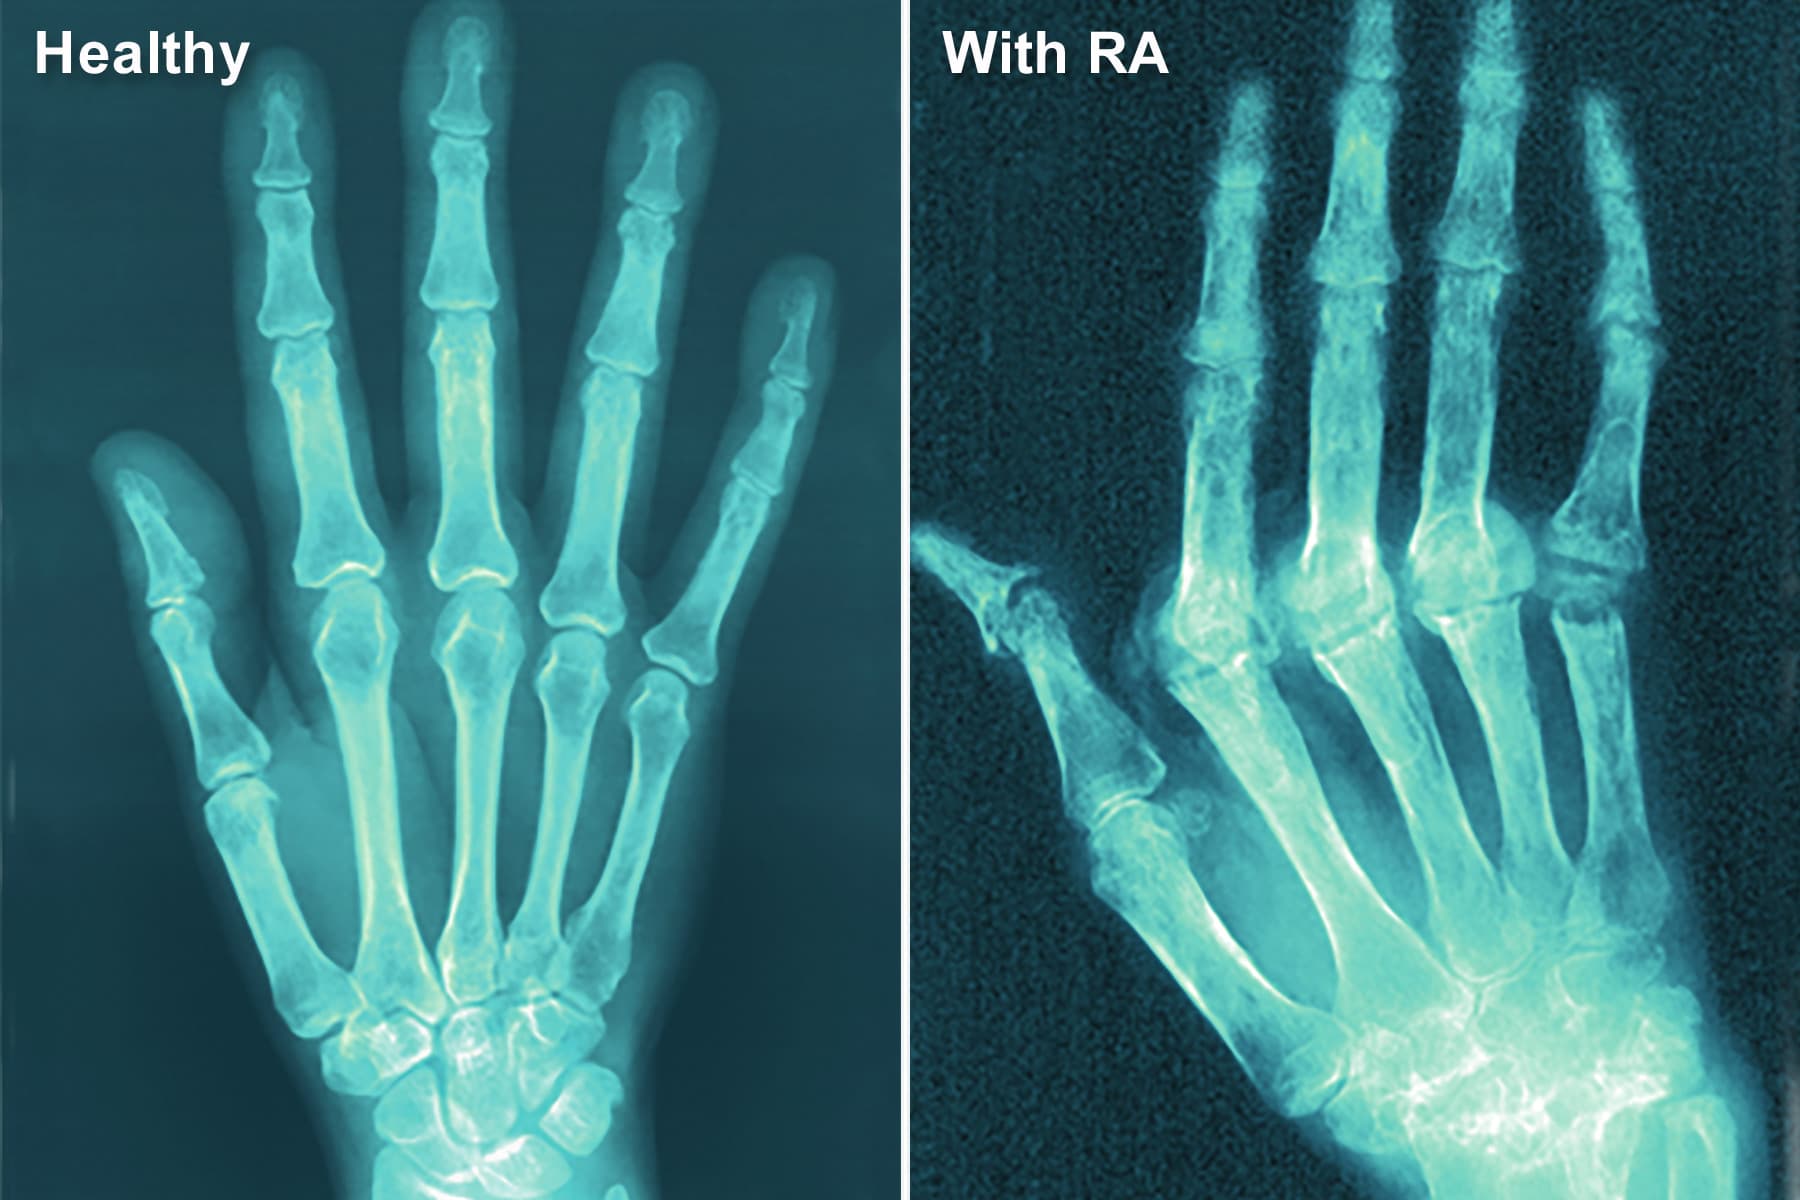 FDA Warns of Hidden Ingredients in Arthritis, Pain Products